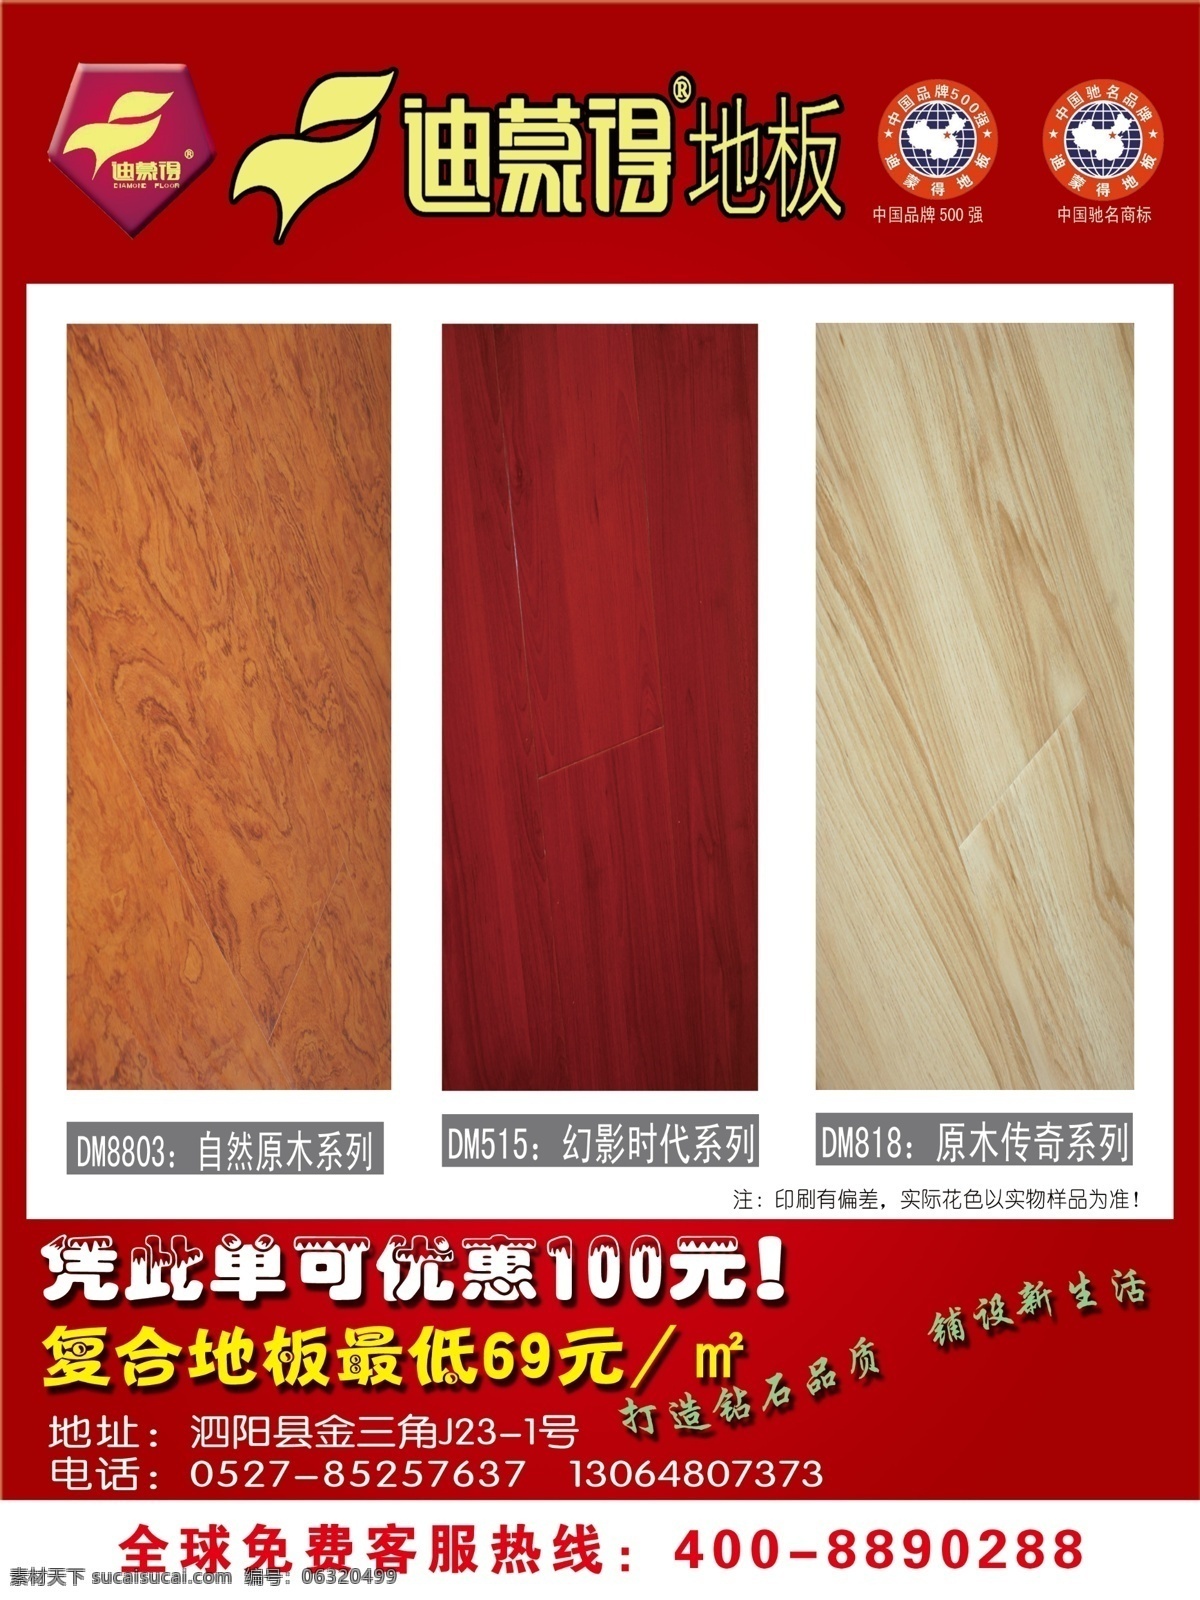 迪蒙 地板 广告设计模板 木地板 其他模版 实木地板 源文件 迪蒙得地板 装饰素材 室内设计